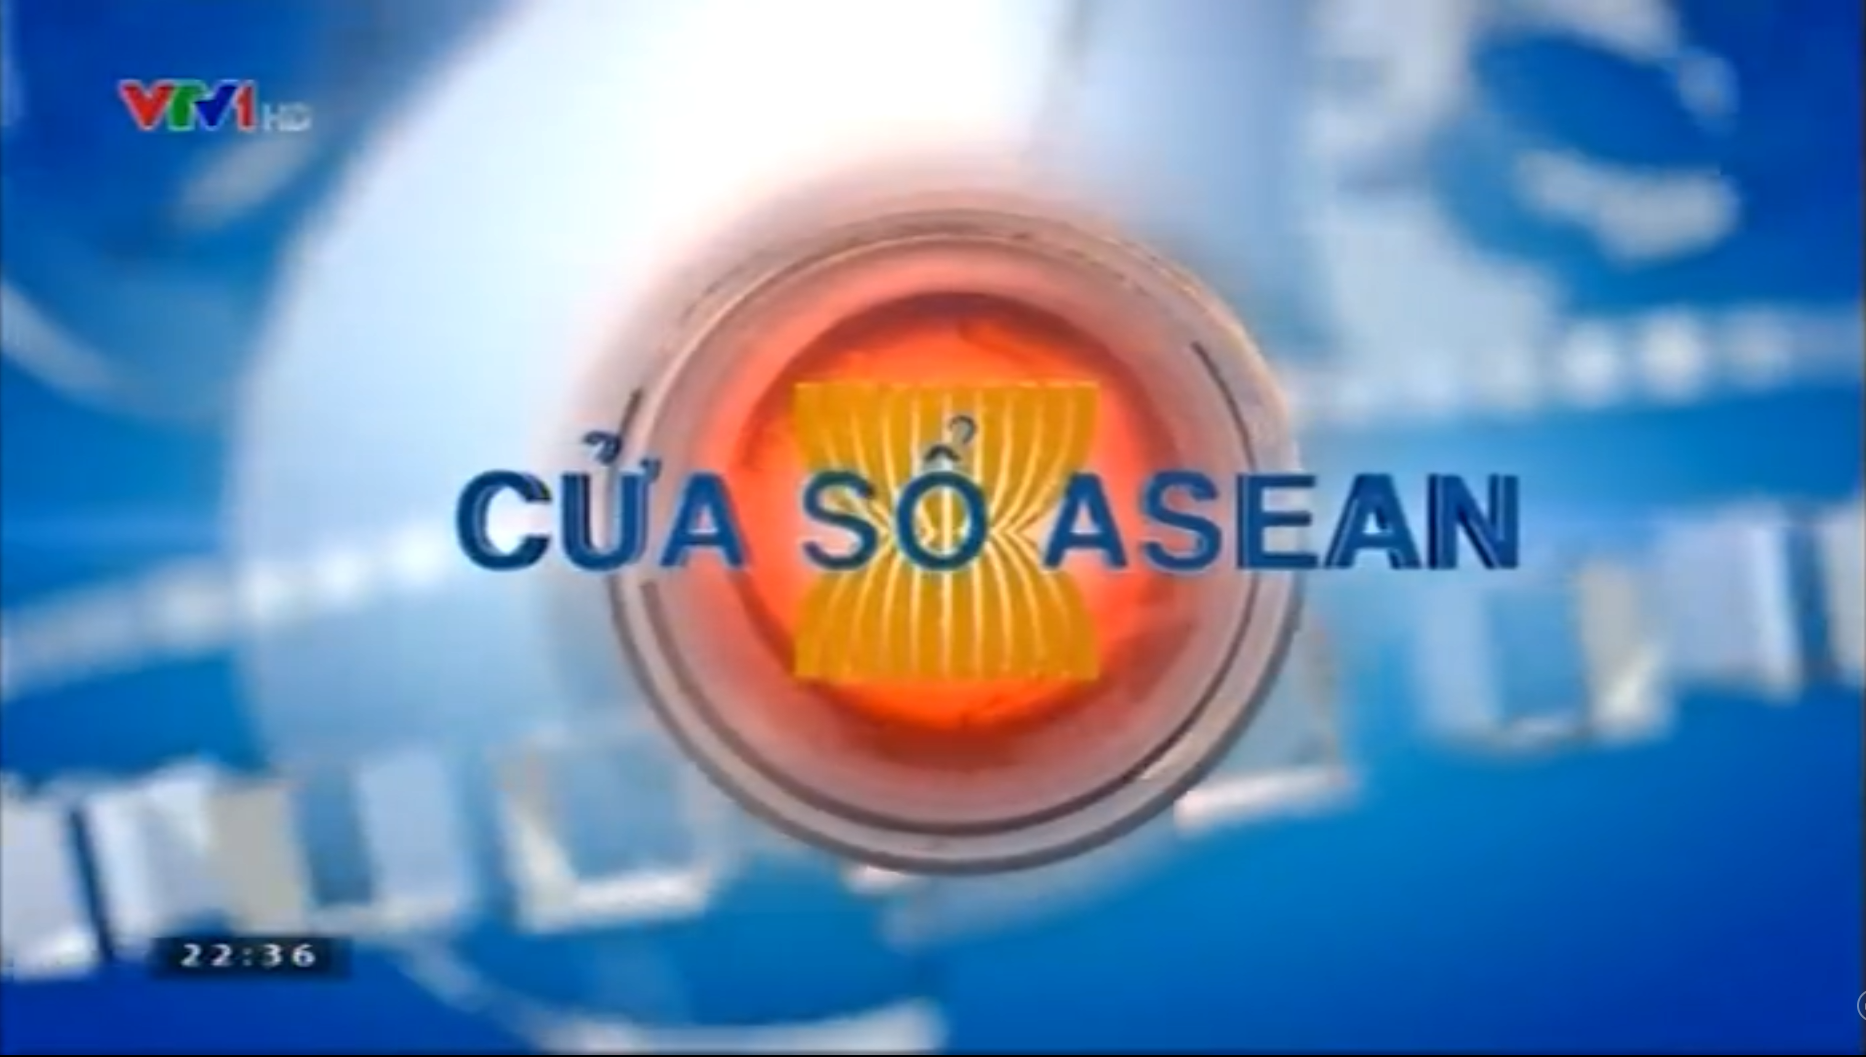 Logo ASEAN trên Wikia là biểu tượng đặc trưng cho khu vực Các Nước ASEAN. Với sự đổi mới và độc đáo, logo này đã trở thành biểu tượng của một cộng đồng đoàn kết và phát triển. Những hình ảnh liên quan đến Logo ASEAN trên Wikia sẽ giúp bạn hiểu rõ hơn về tính cách và giá trị của biểu tượng đặc trưng này.